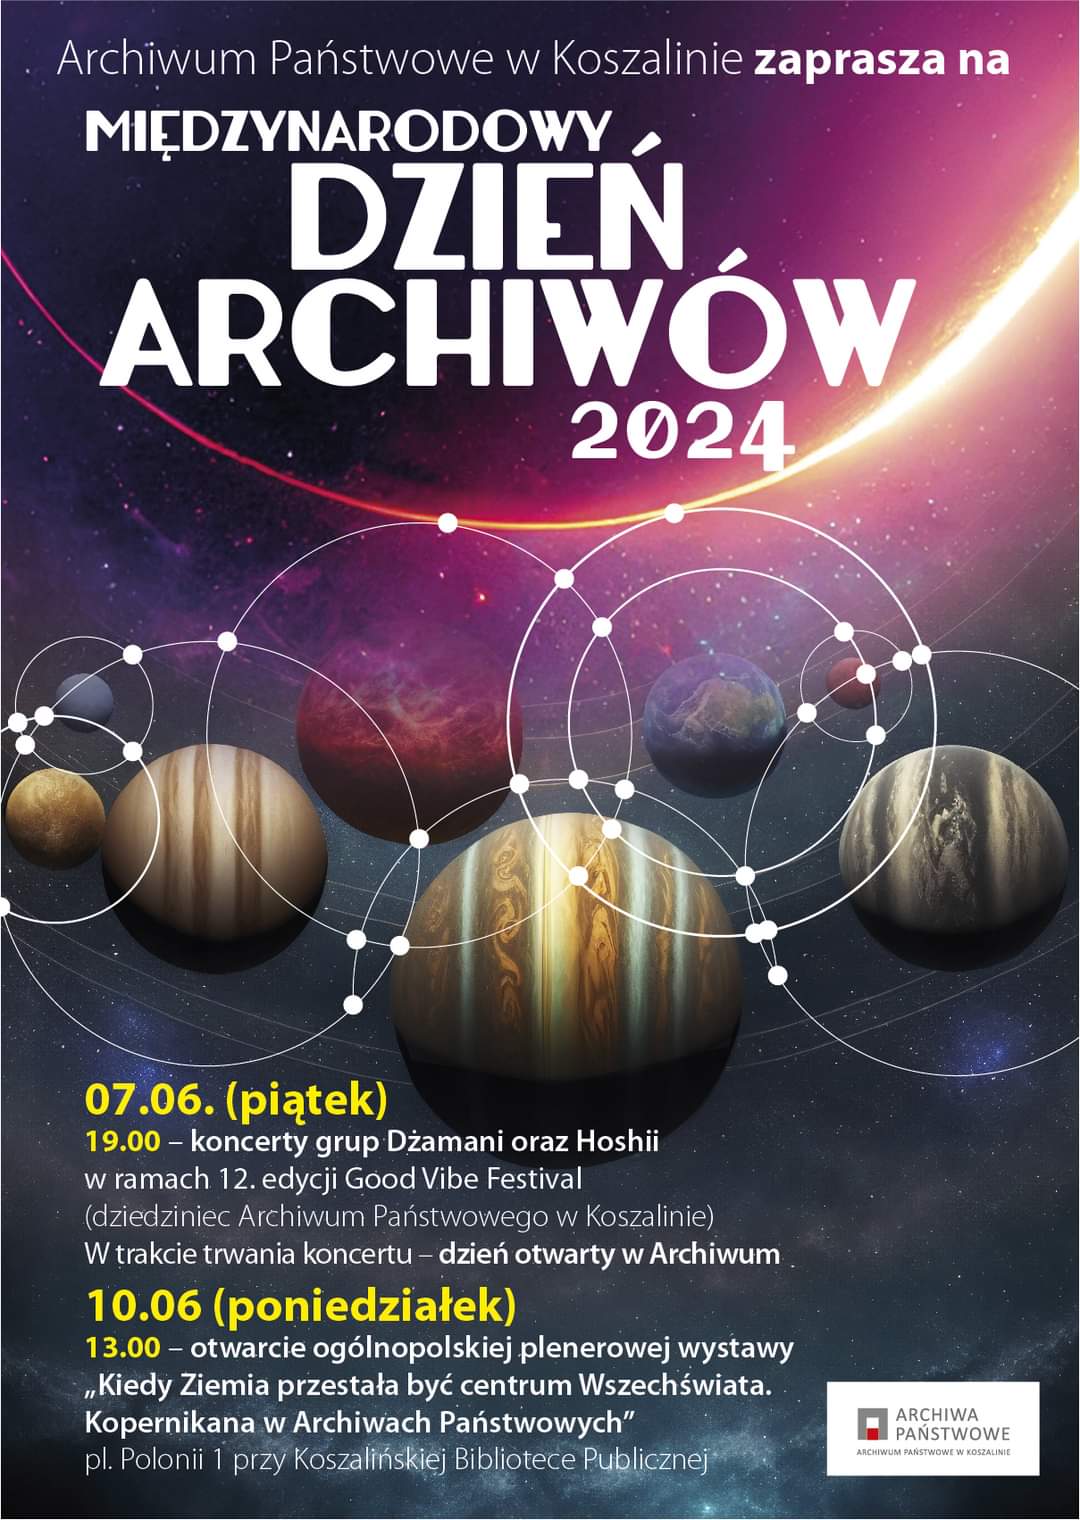 Plakat z zaproszeniem na Międzynarodowy Dzień Archiwów 2024 7 i 10 czerwca 2024